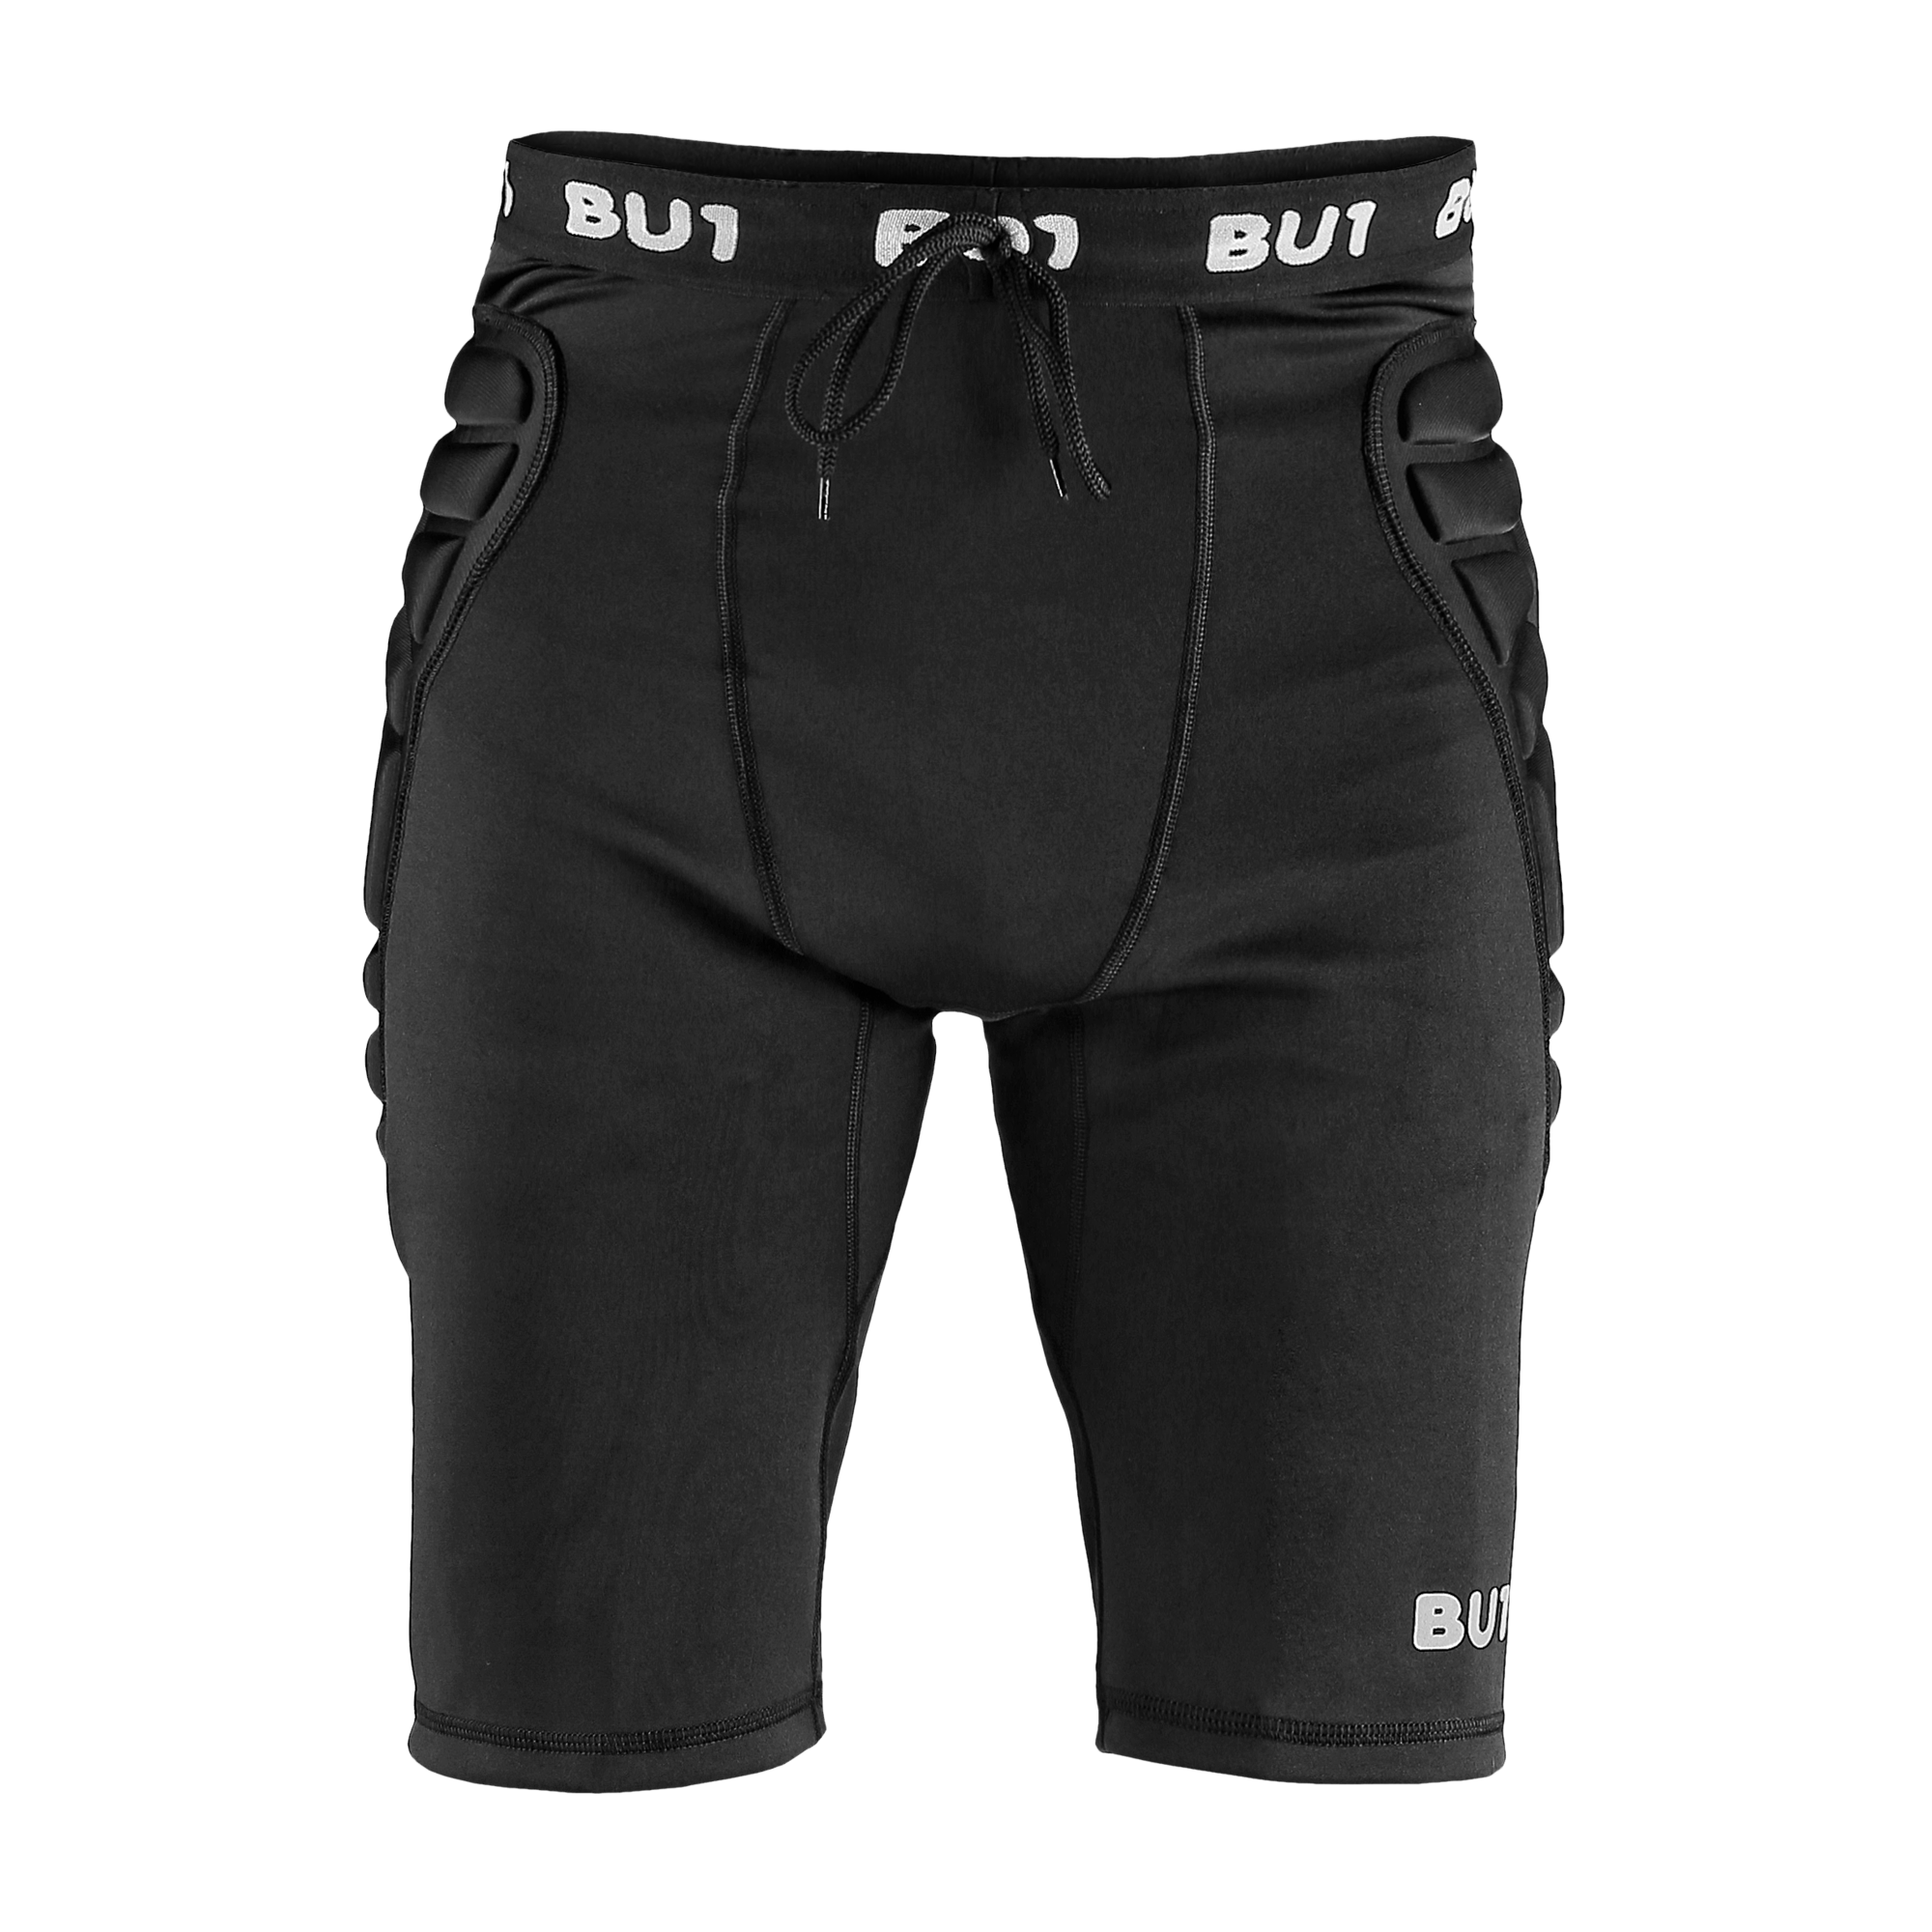 BU1 reinforced leggings short black